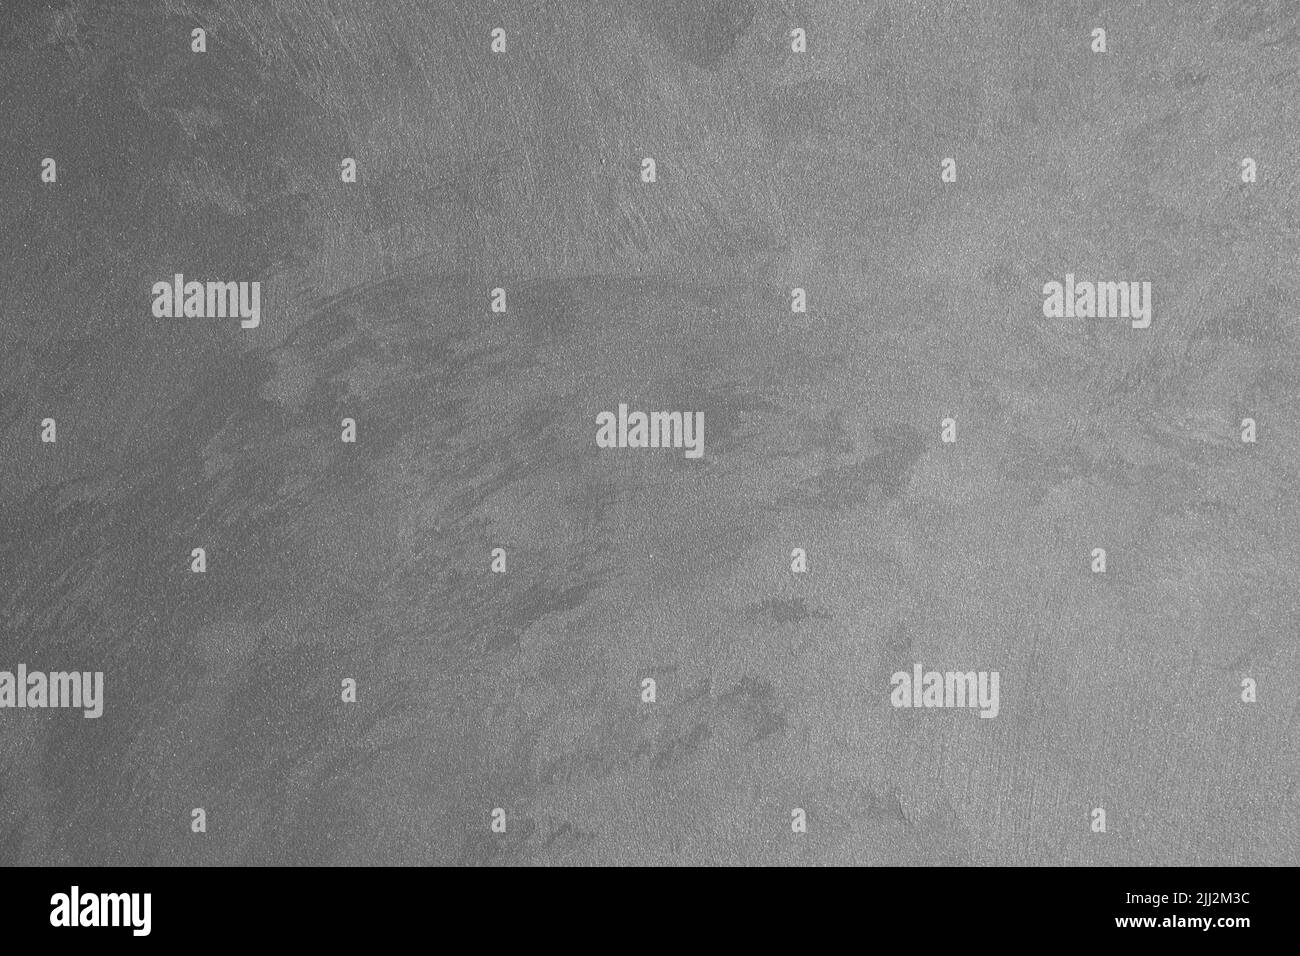 Mur de fond en béton avec nuances de gris clair et foncé. Modèle de matériau industriel. Banque D'Images